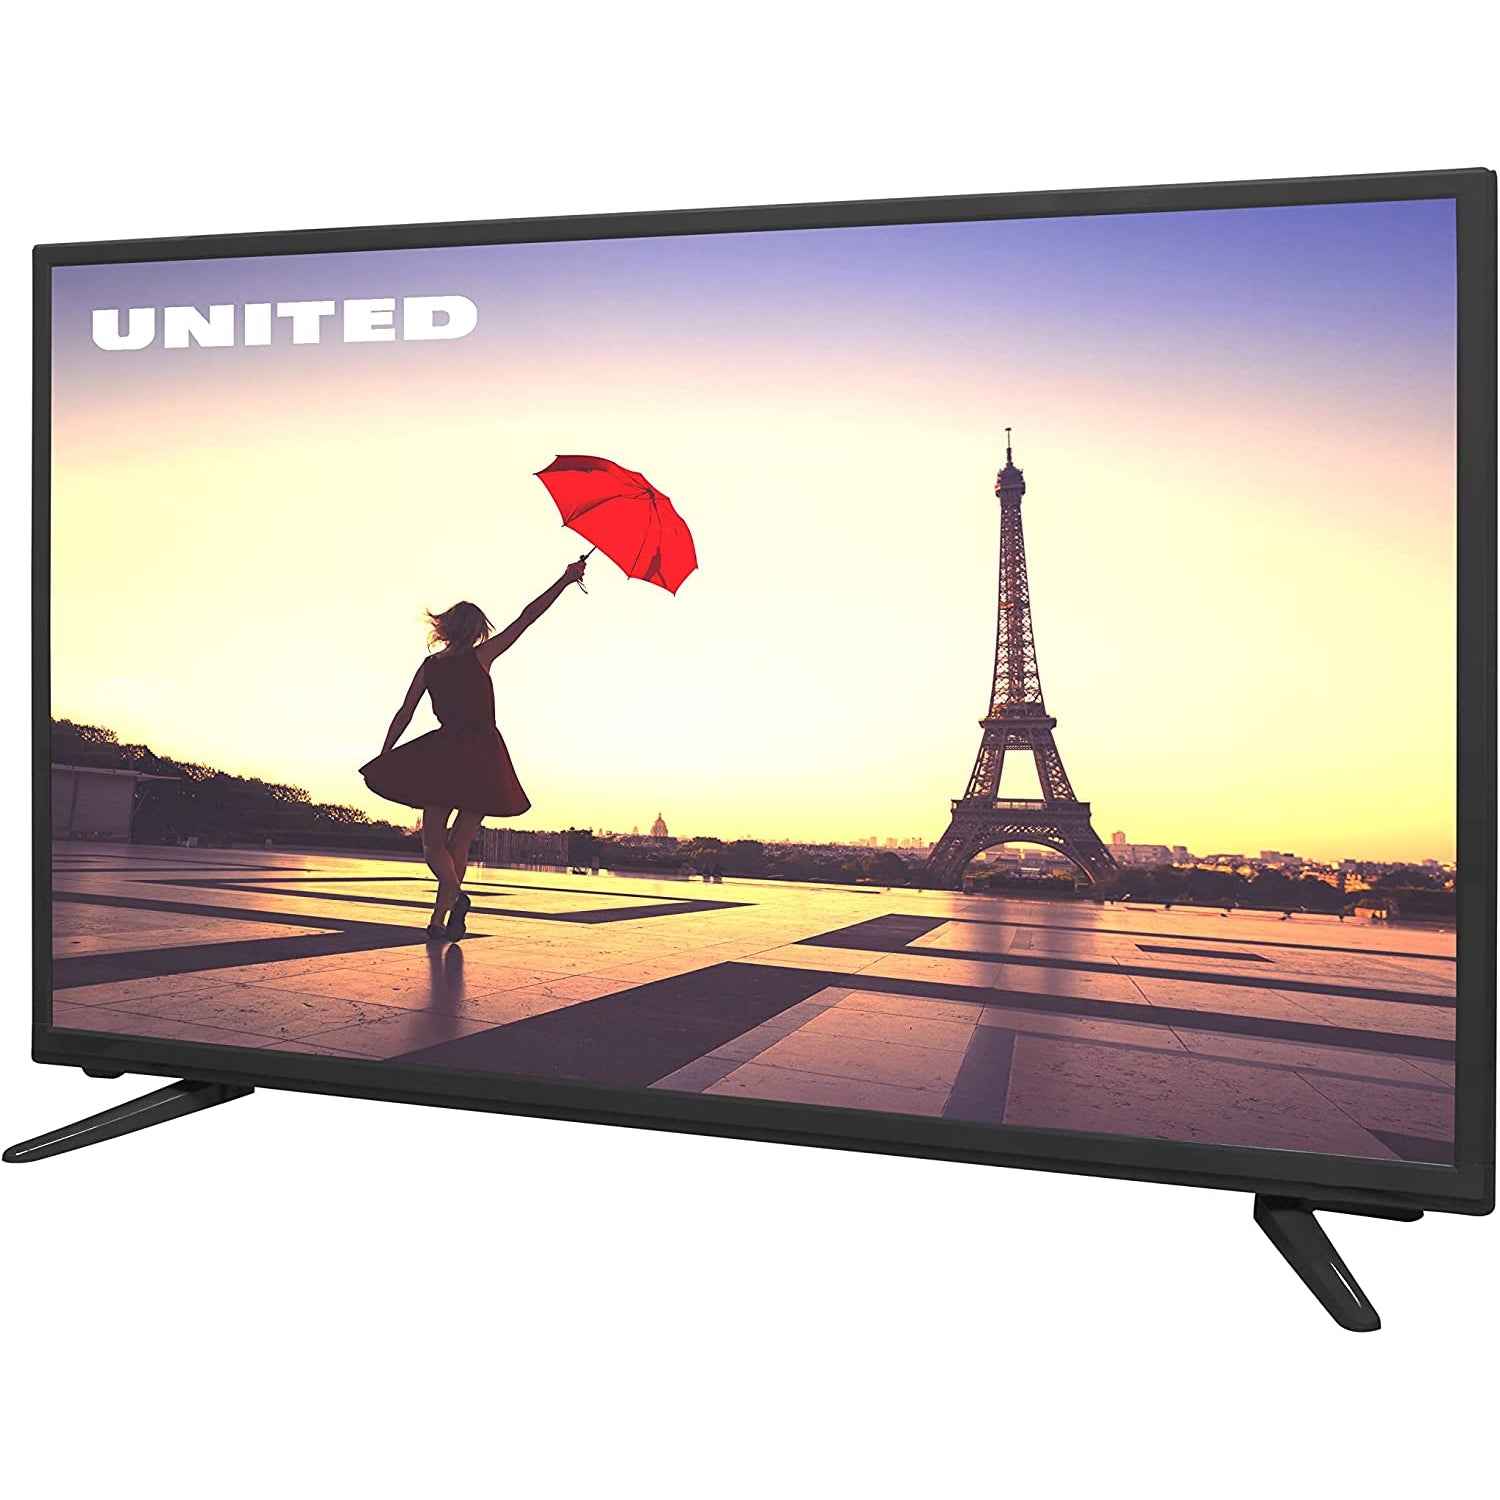 UNITED TV HD Ready LED32DH58 32 inch - Black